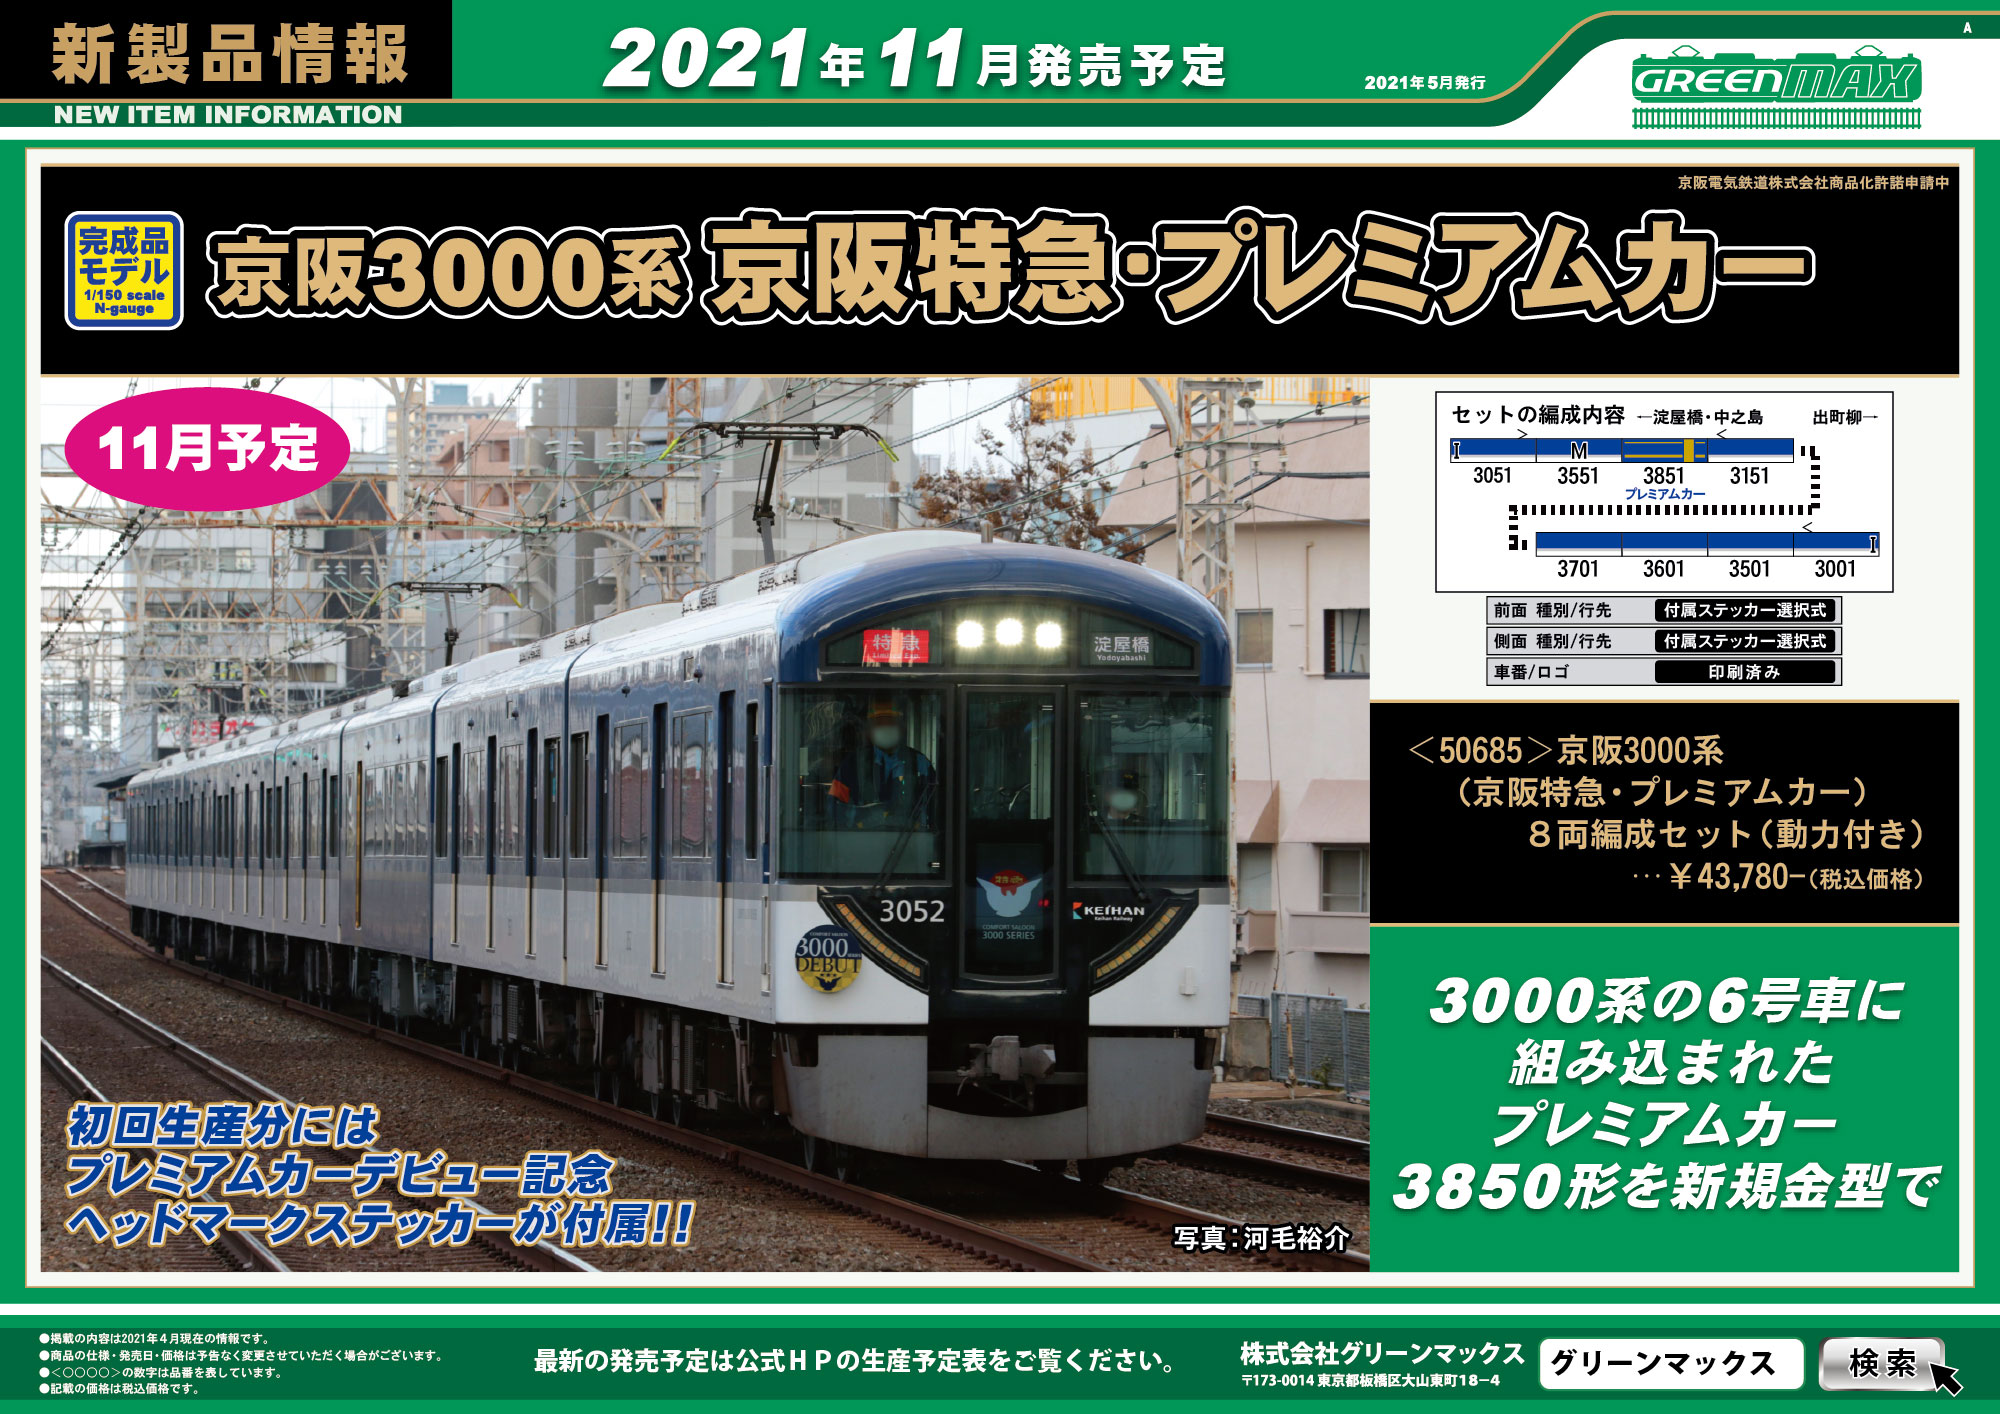 2021年5月12日発行A｜新製品情報ポスター｜Nゲージ鉄道模型のグリーンマックス